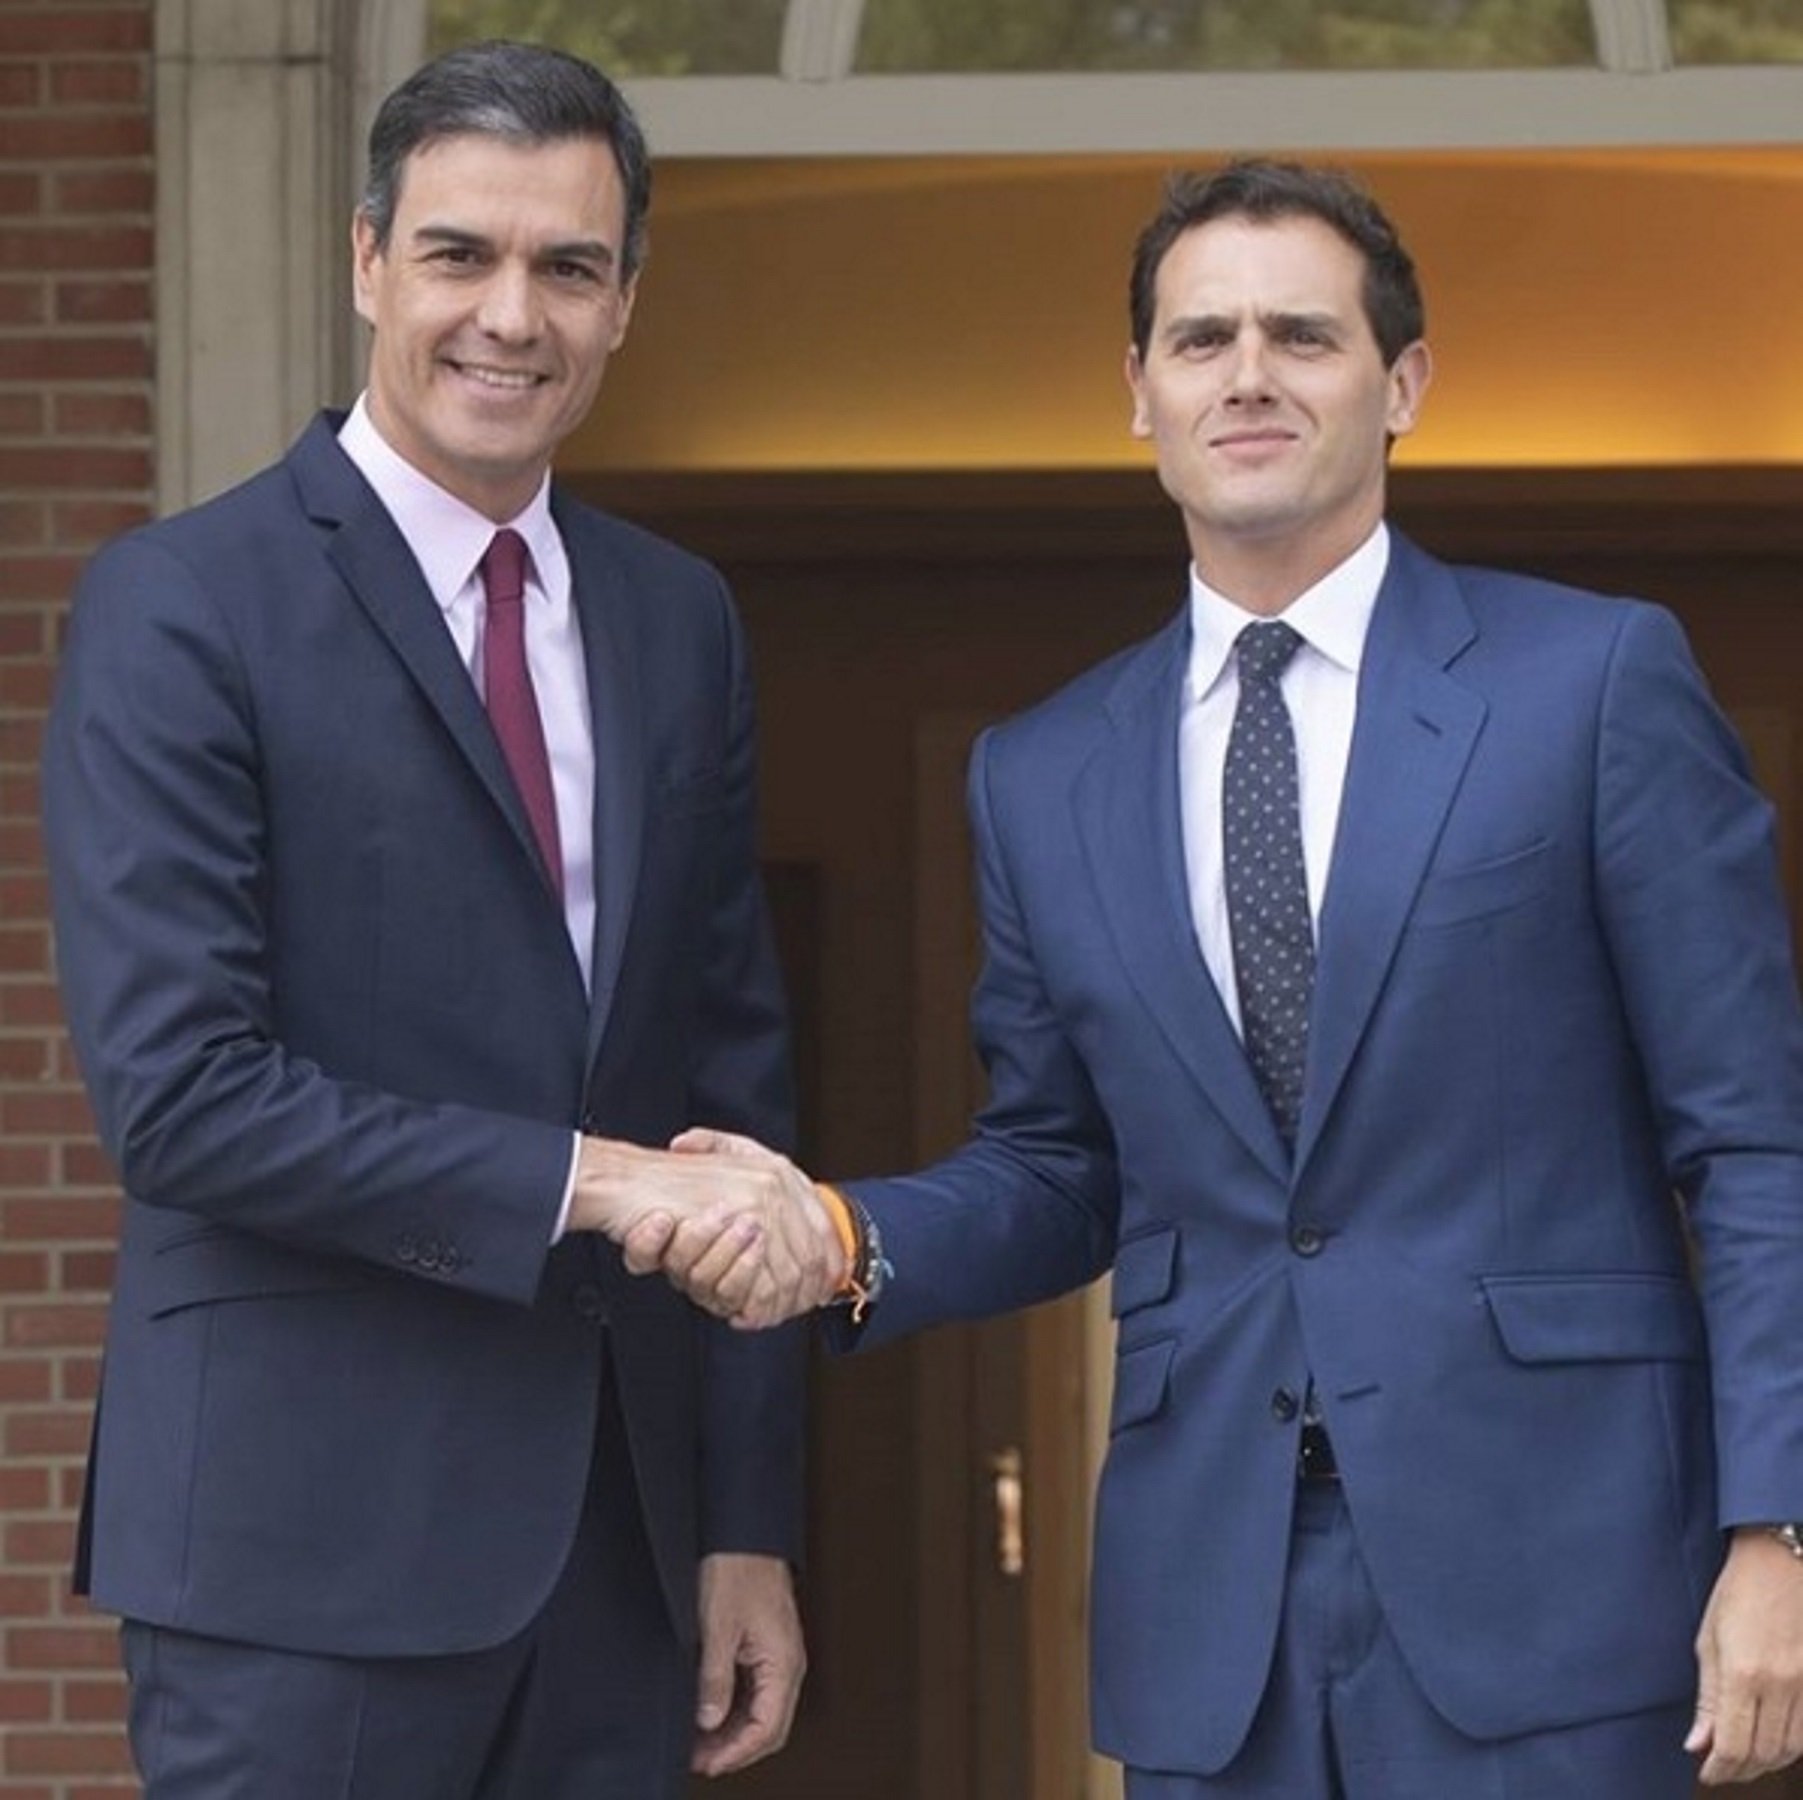 Pedro Sánchez amb Albert Rivera a Instagram i els votants esclaten: “Con Rivera, NO”